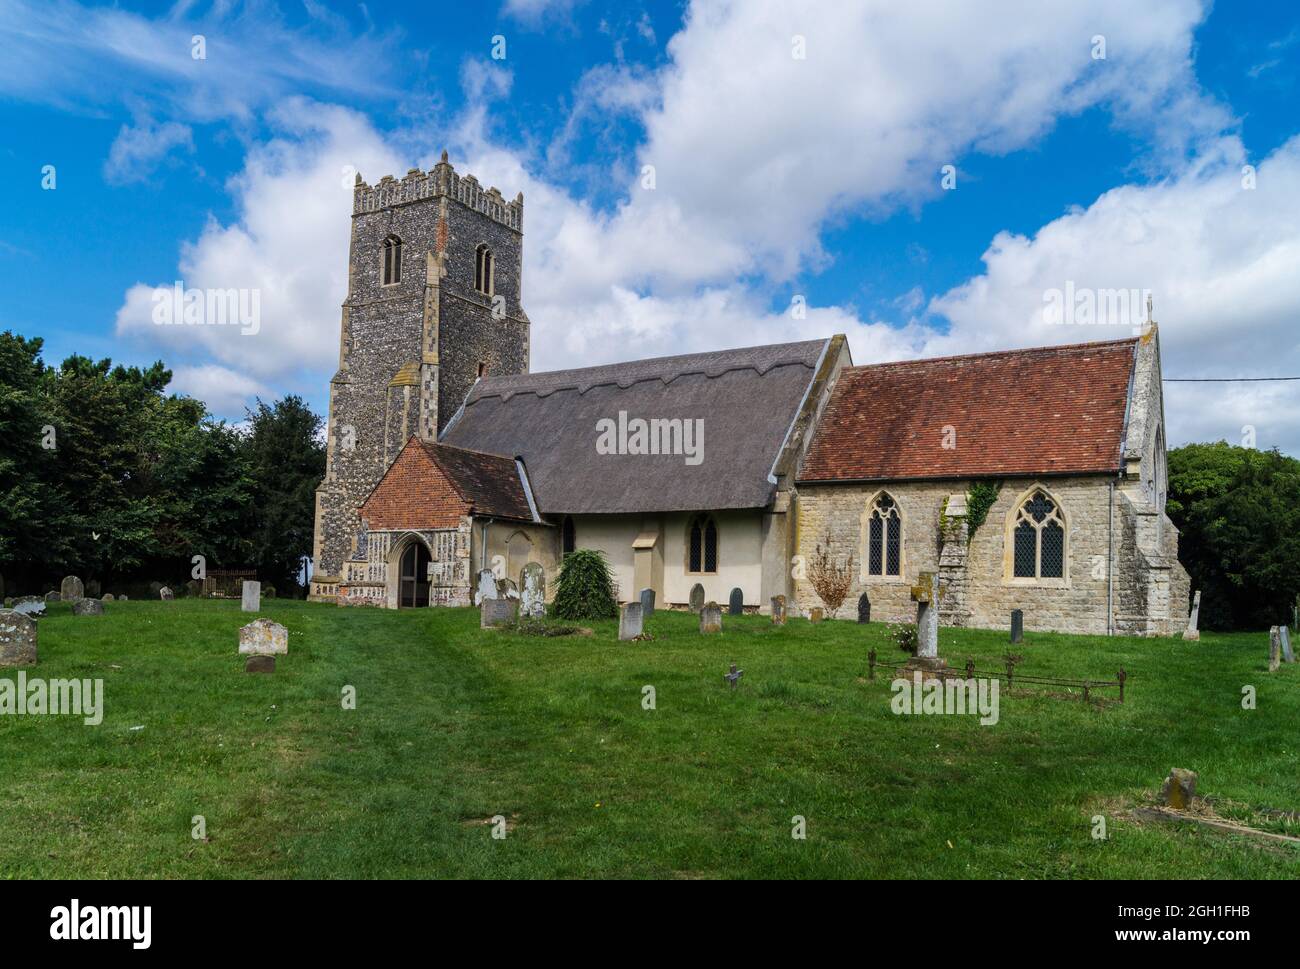 St. Botolph's Church, Iken, Suffolk, England Stock Photo